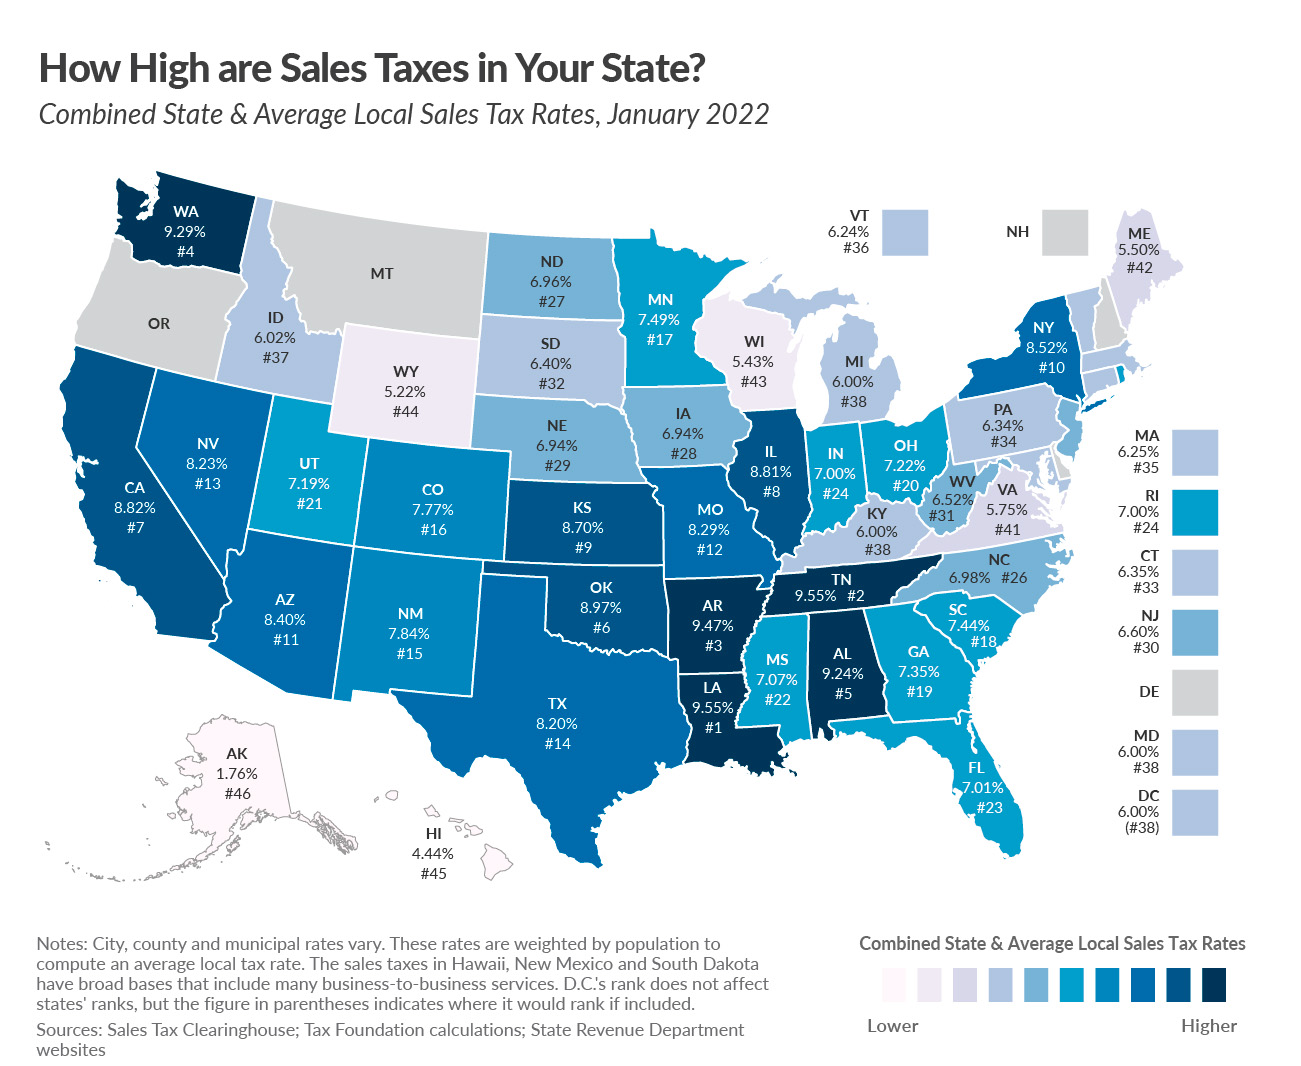 The Nebraska sales tax rate